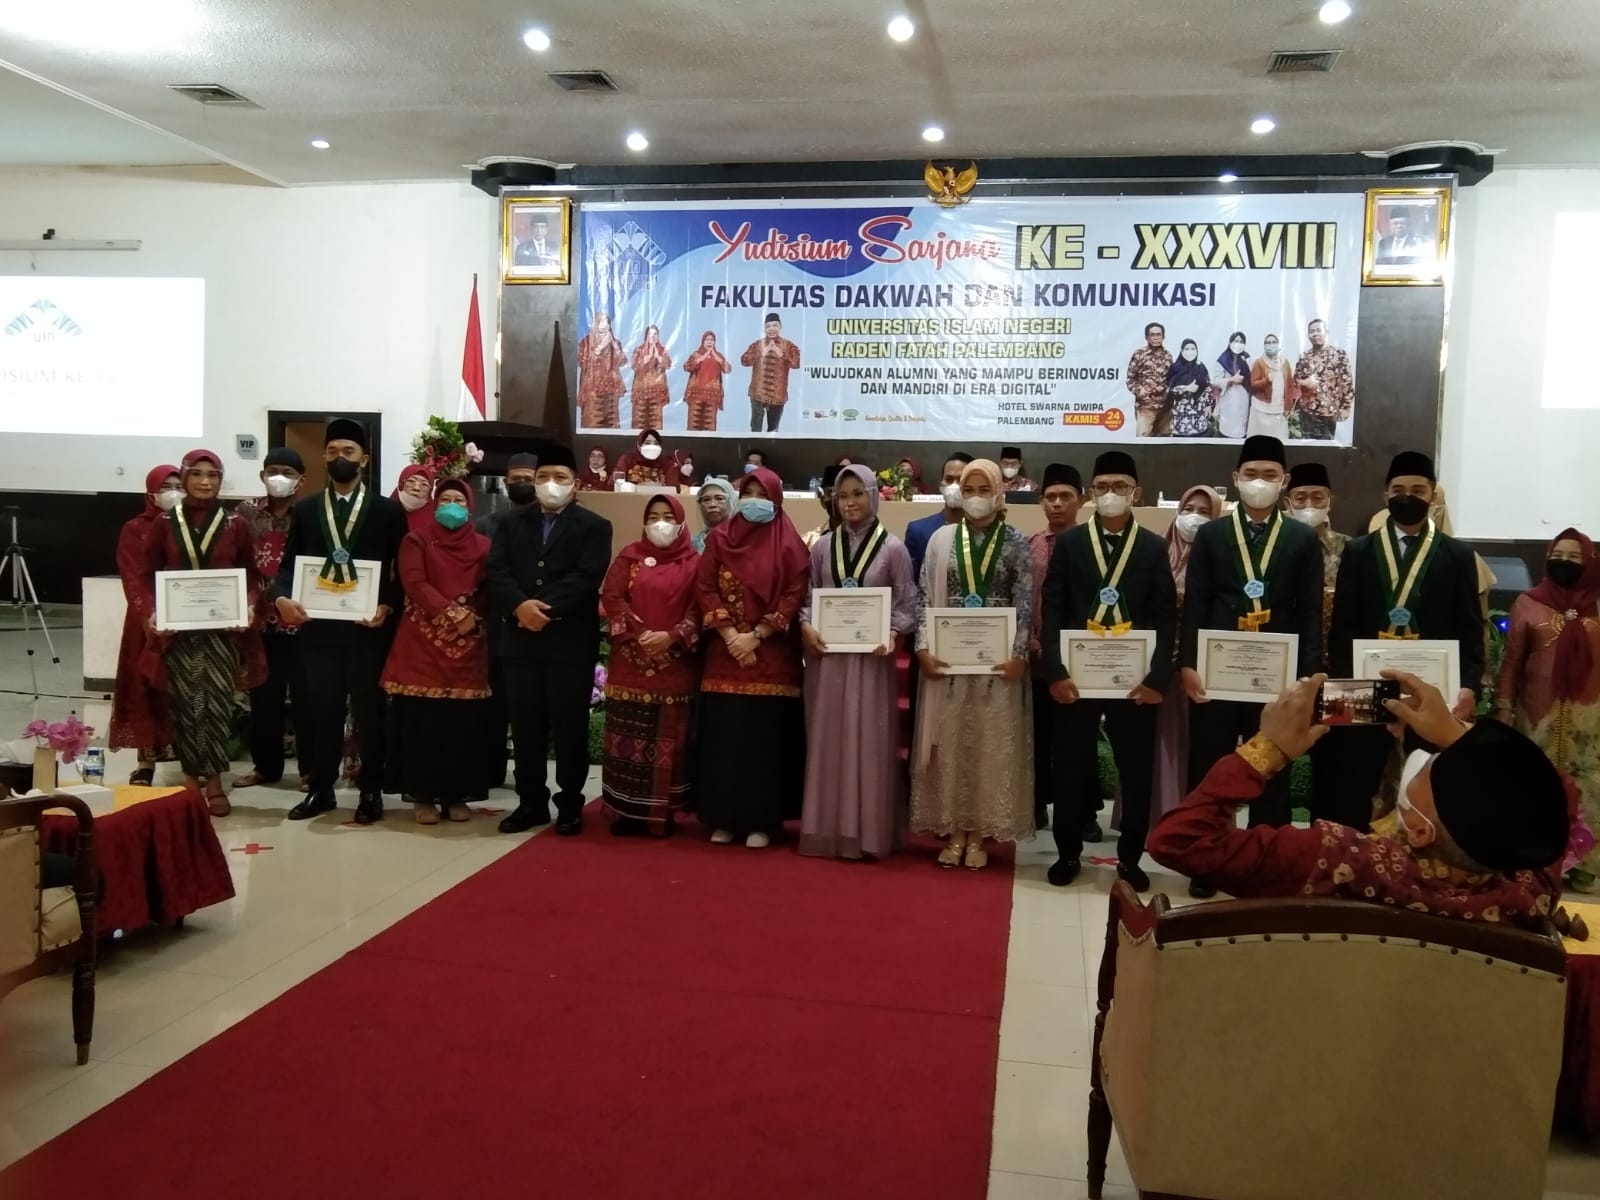 Gelar Yudisium ke 38, Fakultas Dakwah dan Komunikasi UIN Raden Fatah Luluskan 114 Alumni